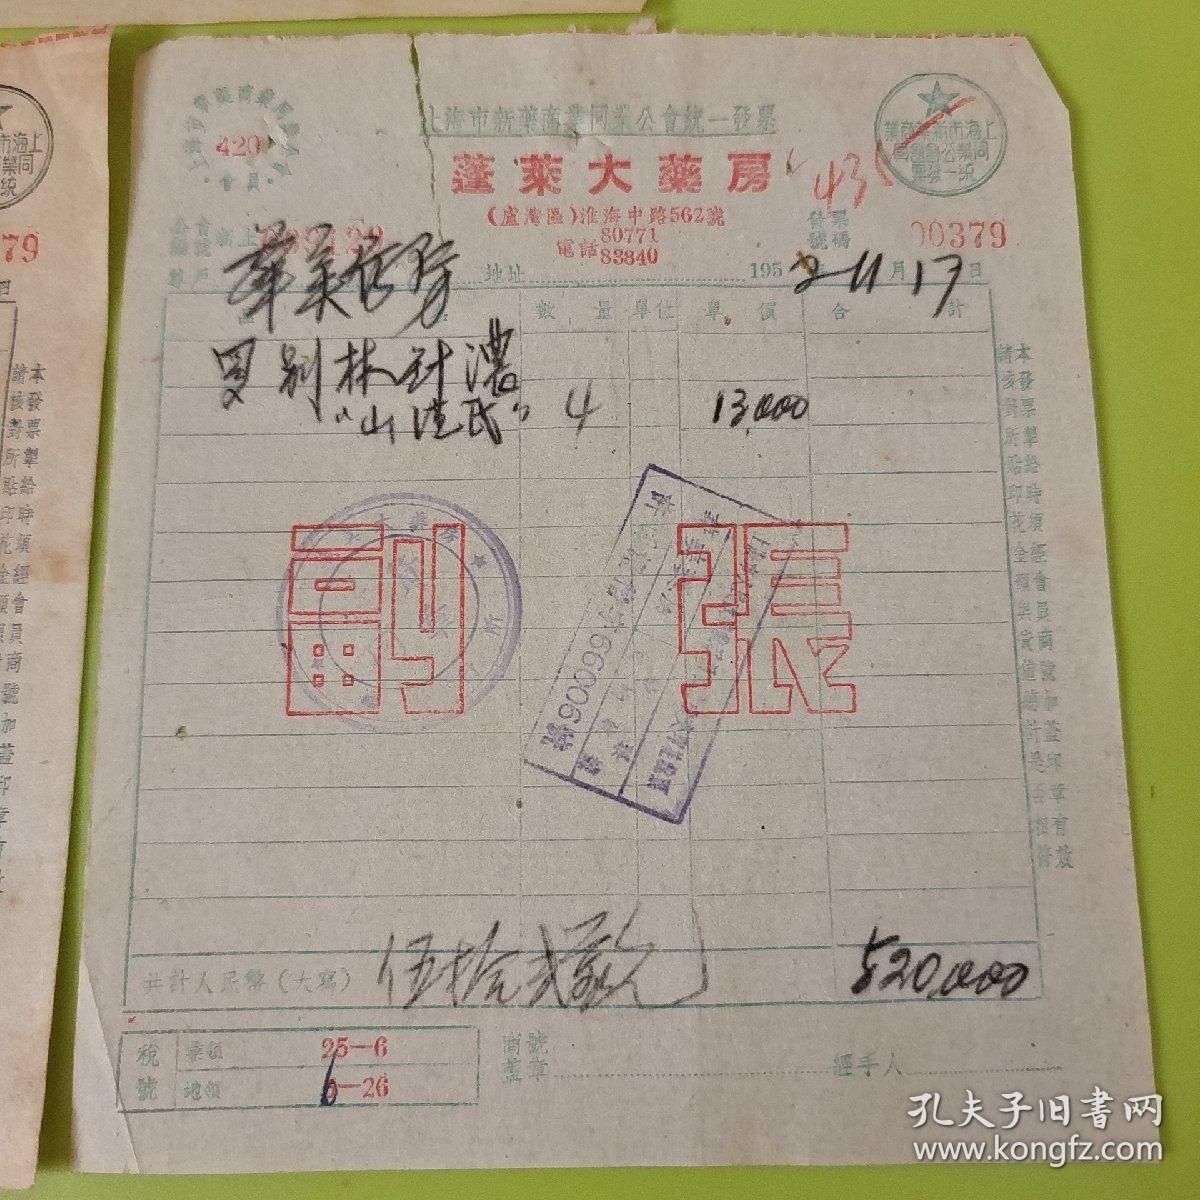 1952年上海市新药商业同业公会统一发票及单据3张【正副张】【蓬莱大药房】【会员号420】